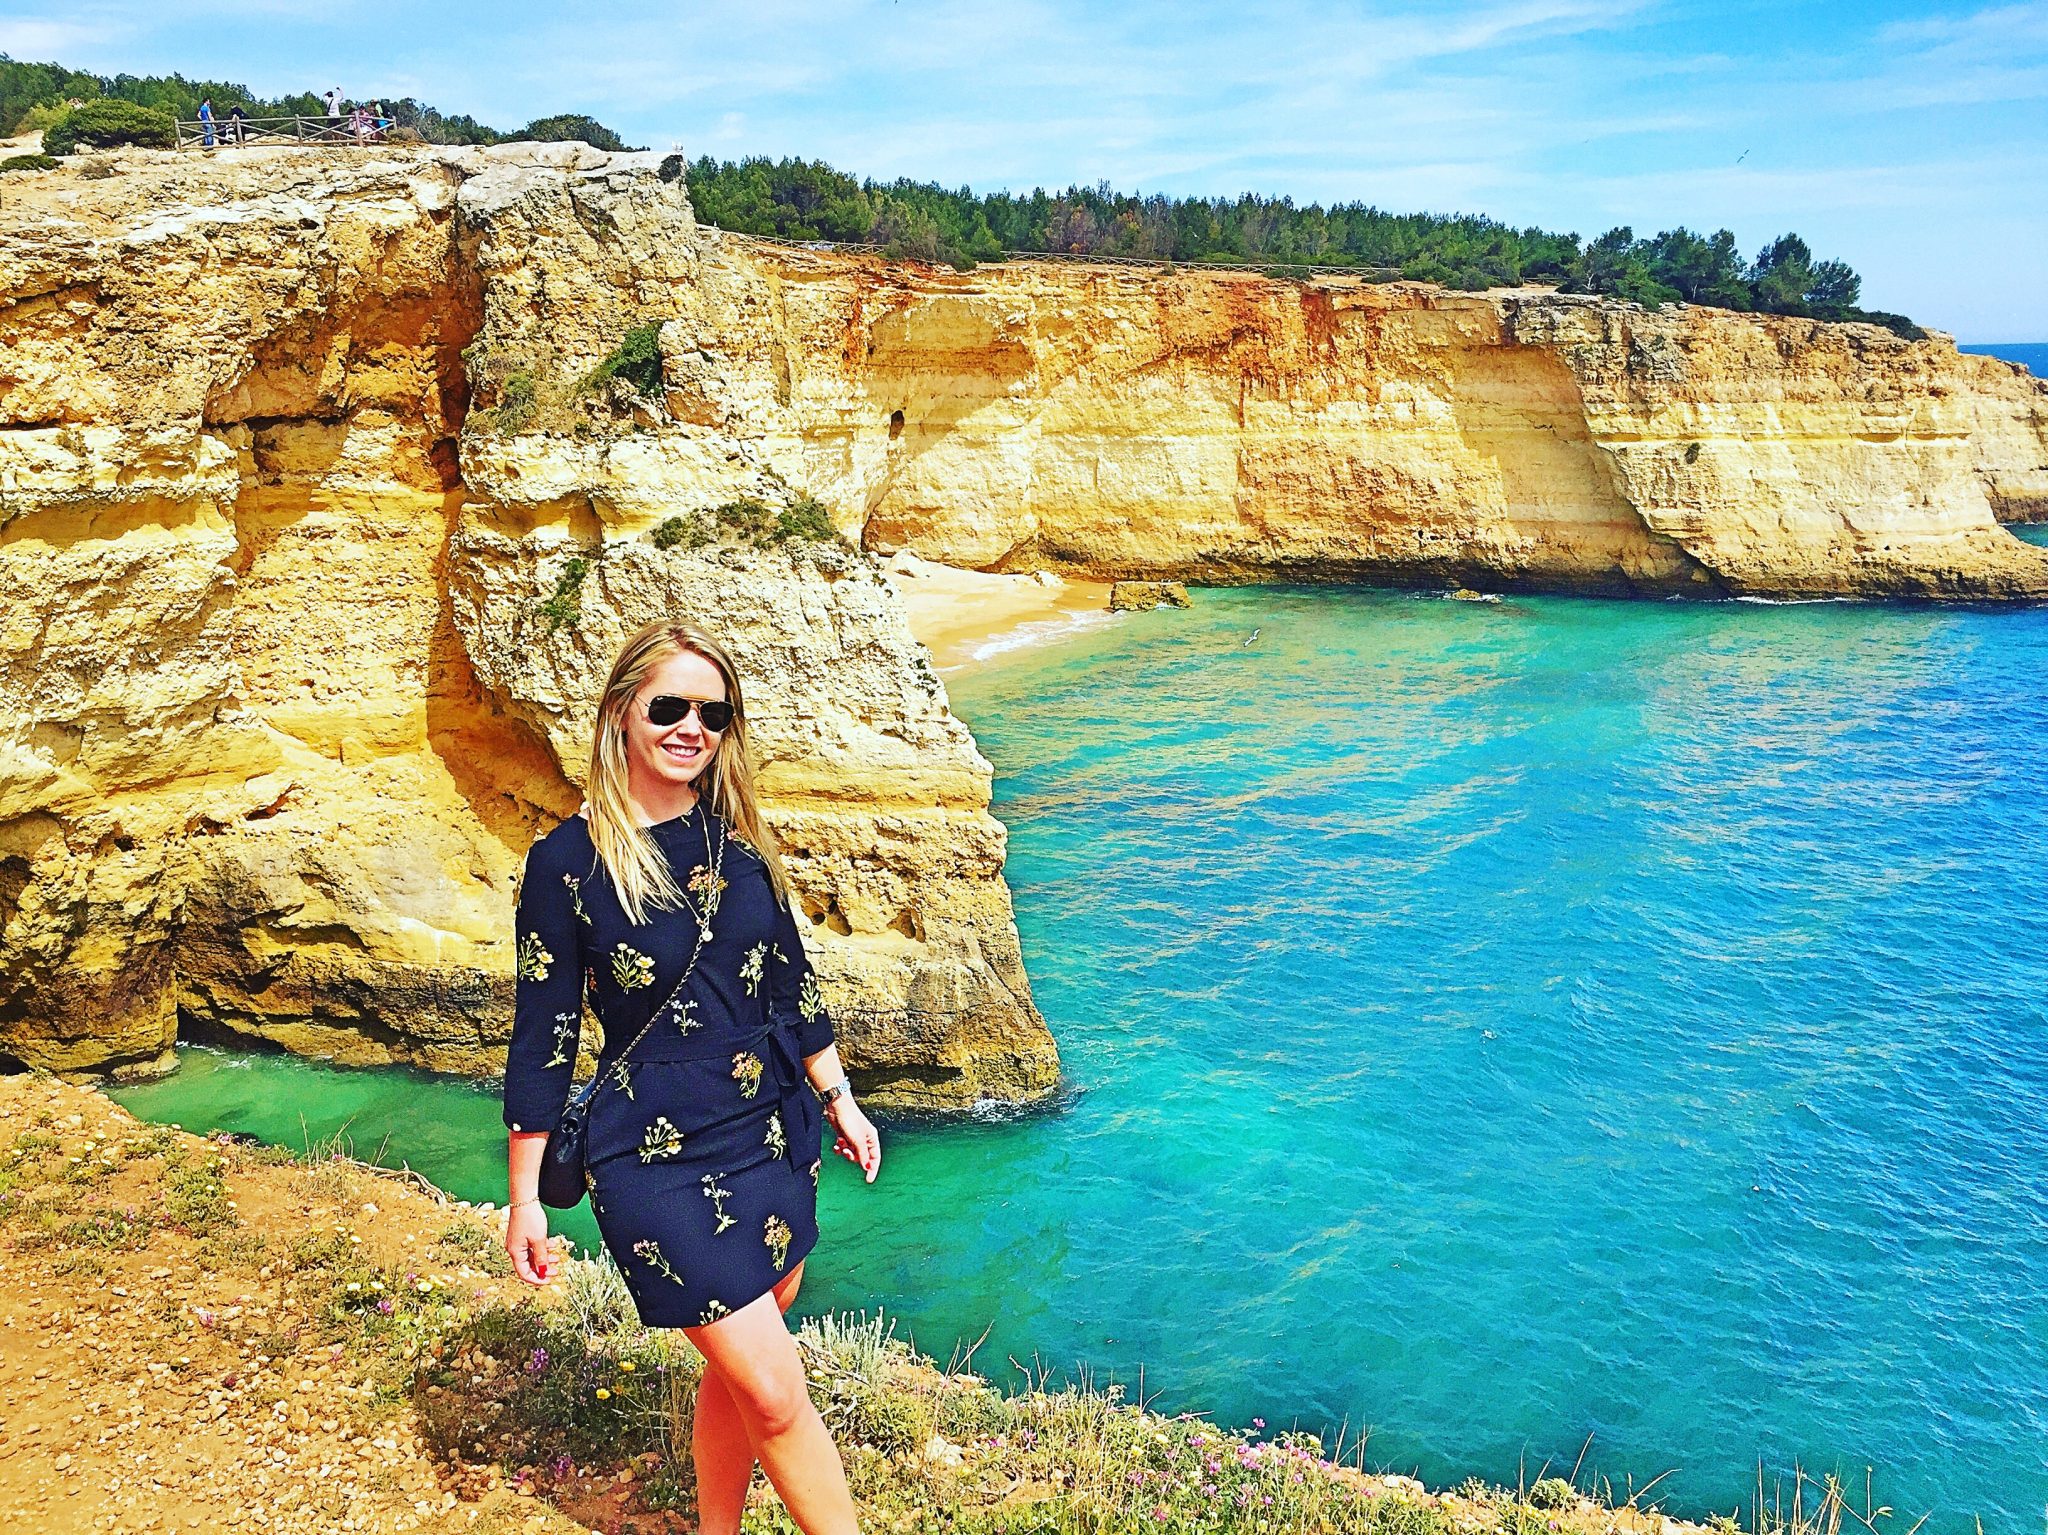 Algarve kusten